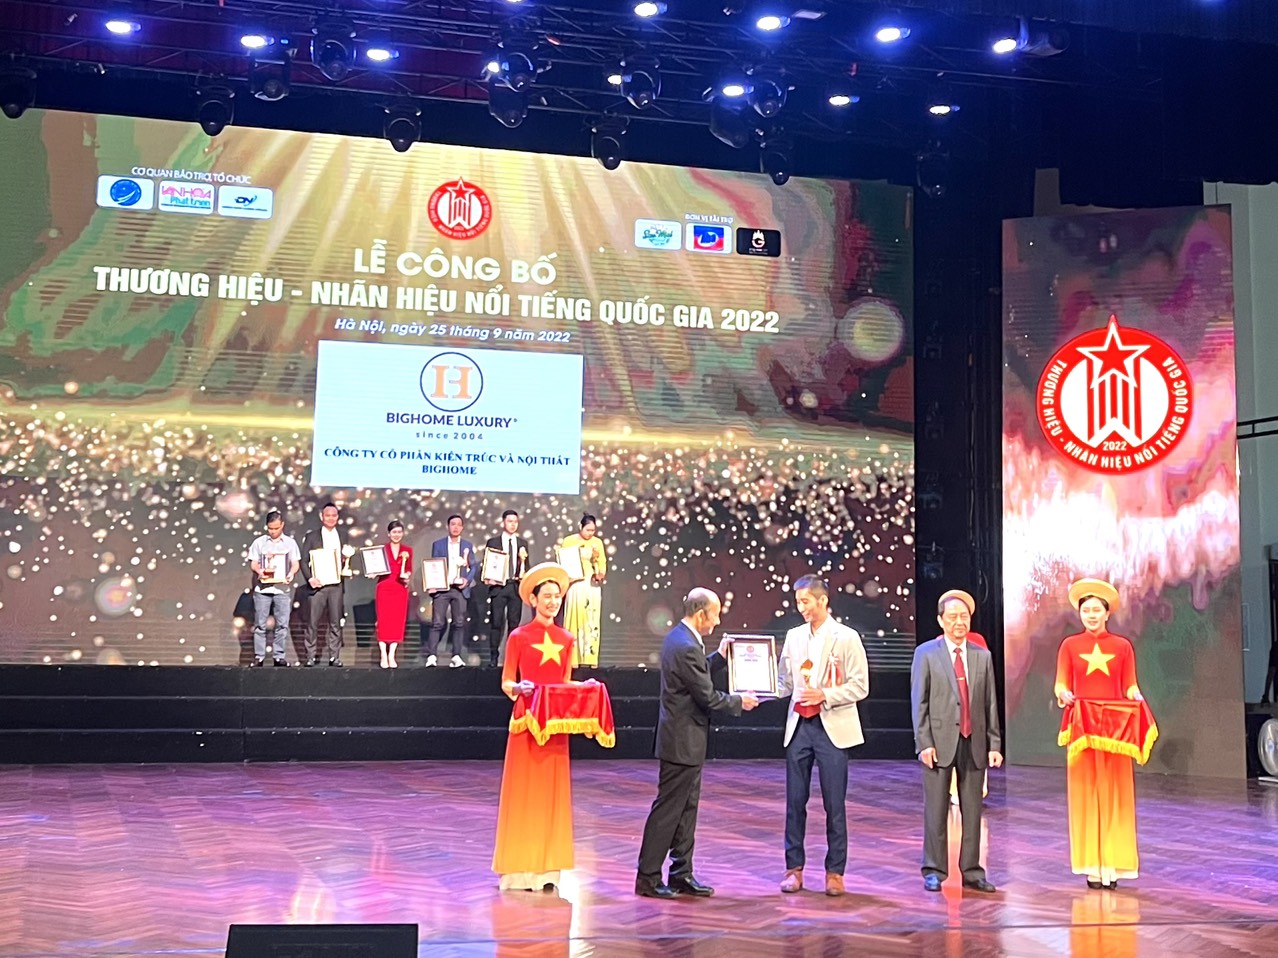 Anh Trần Hùng - Giám đốc Công ty Bighome lên nhận giải thưởng Top 10 thương hiệu nổi tiếng Quốc gia 2022